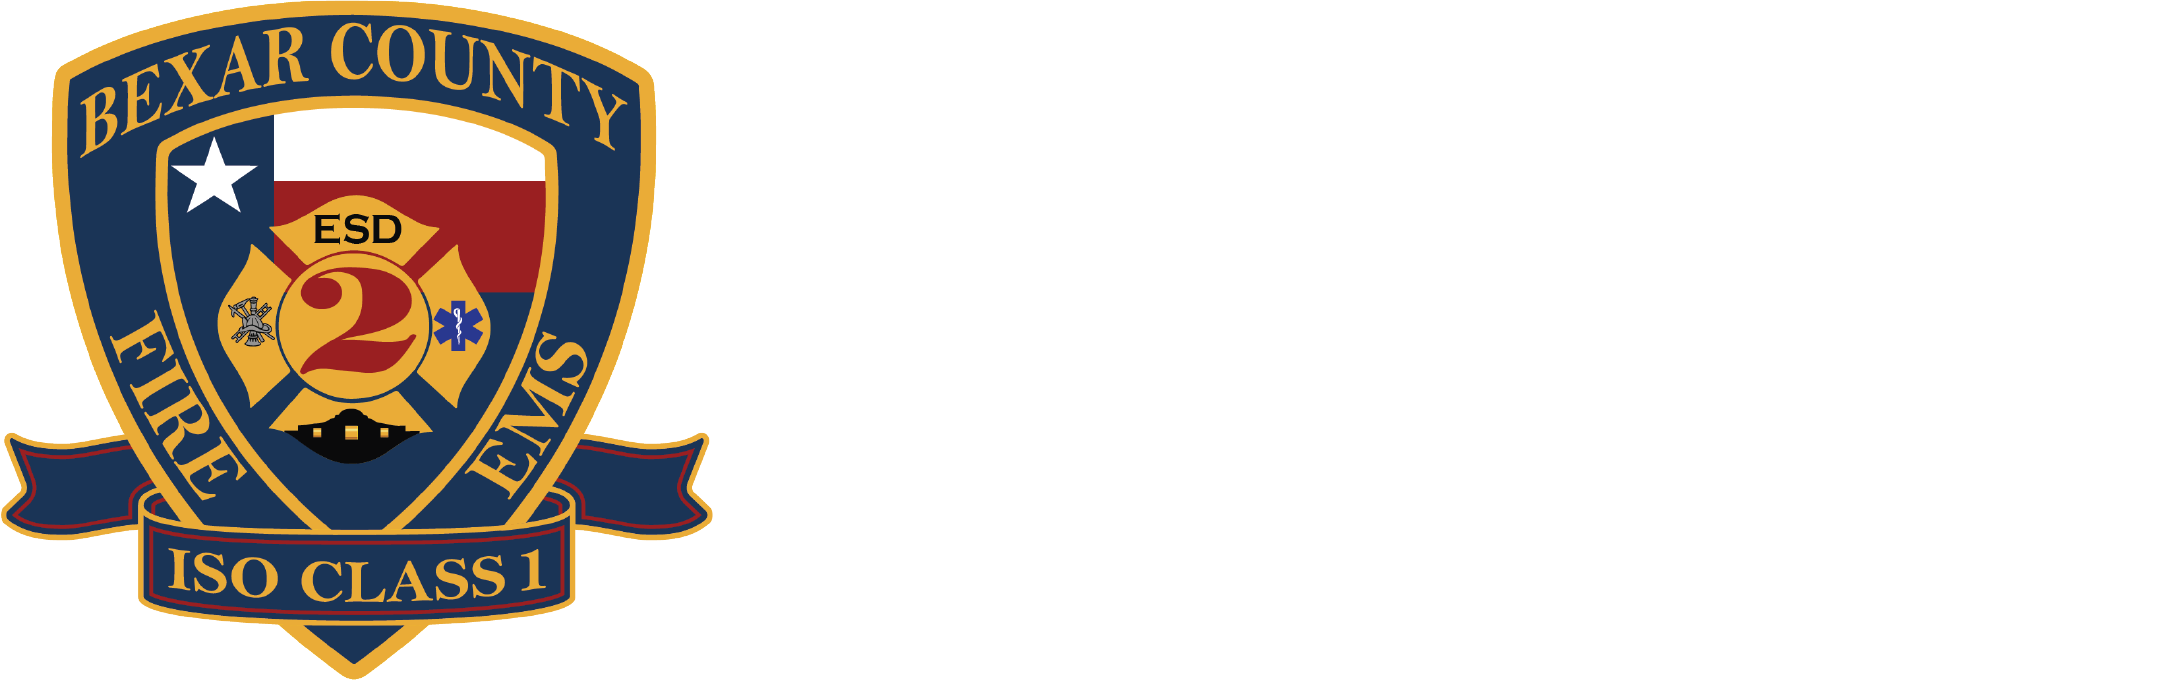 Bexar County ESD No. 2